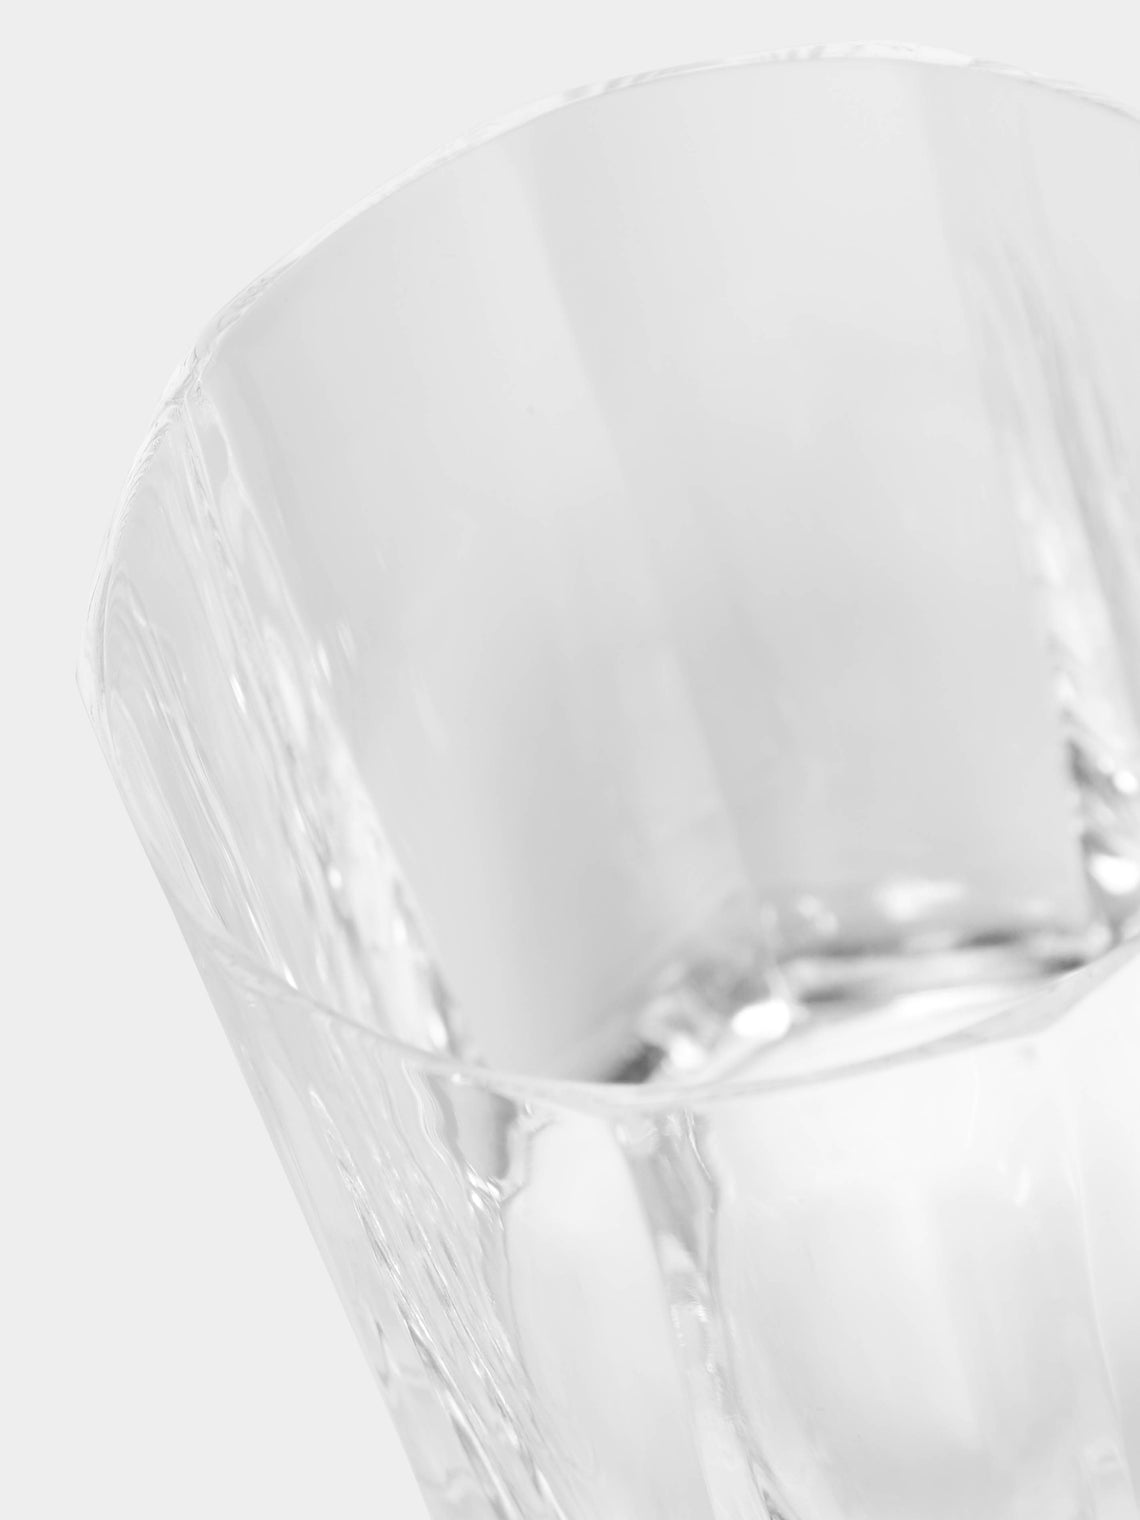 Emilia Wickstead - Venice Crystal Wine Glass -  - ABASK